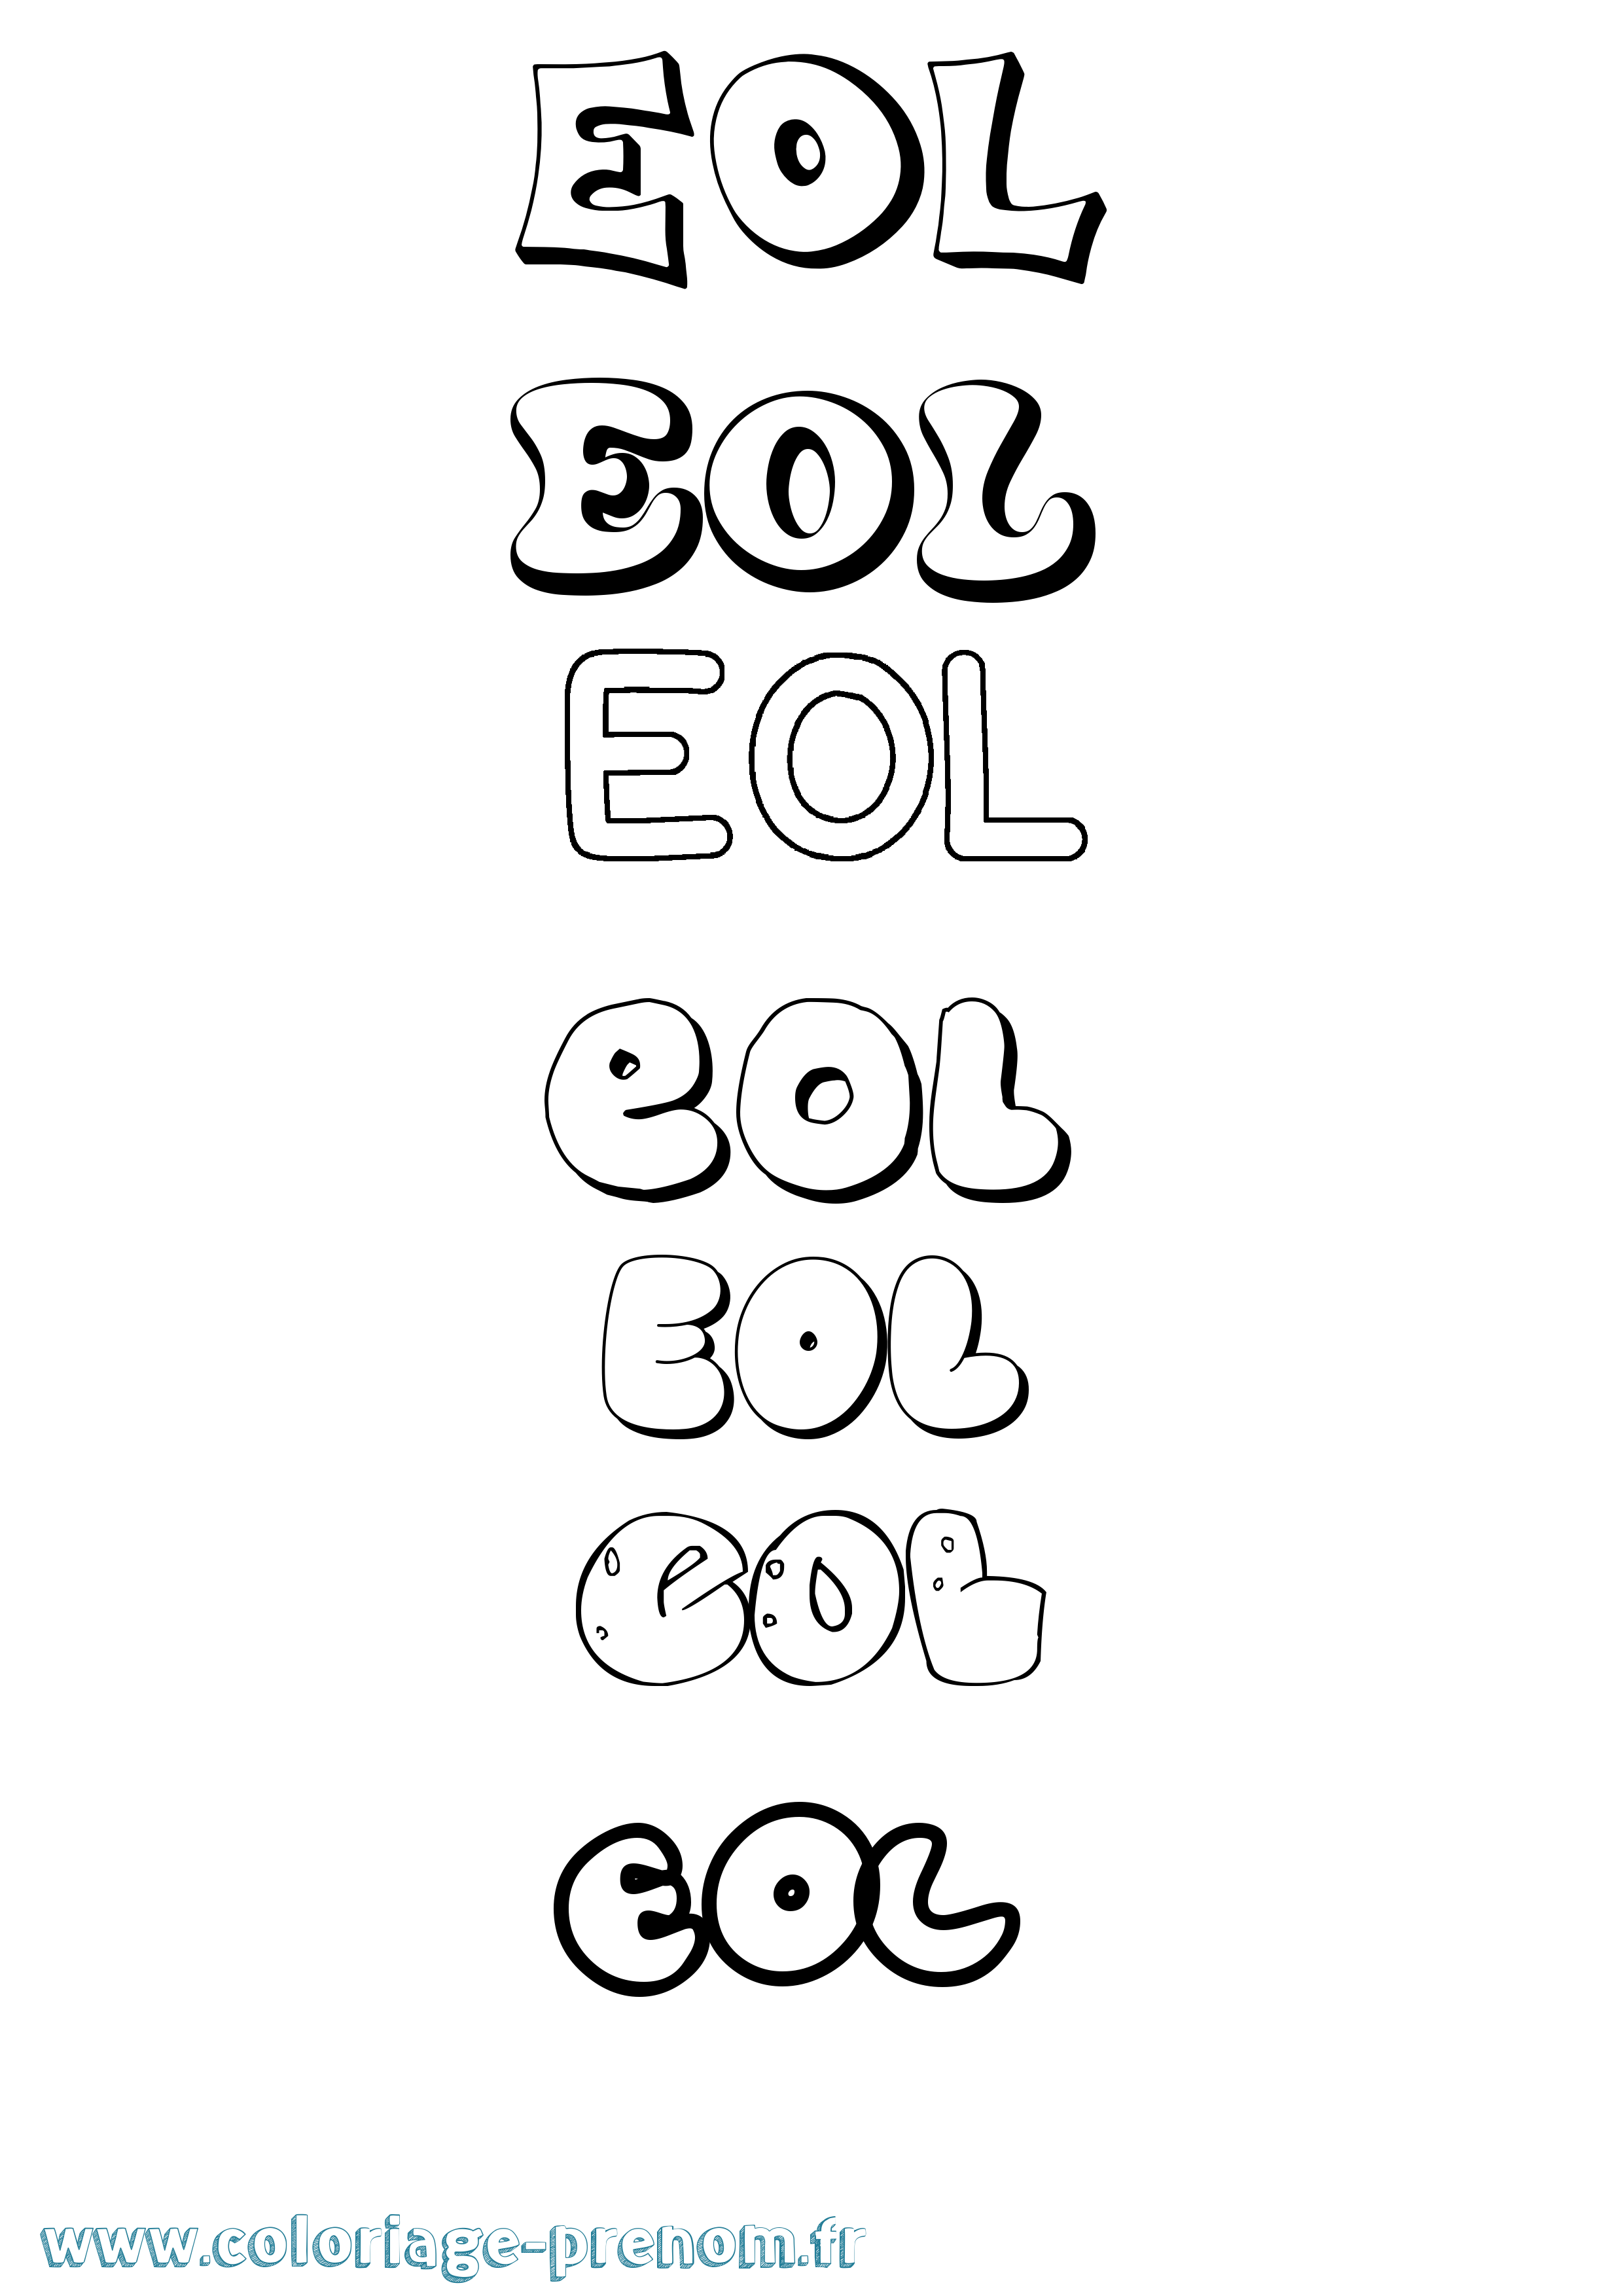 Coloriage prénom Eol Bubble